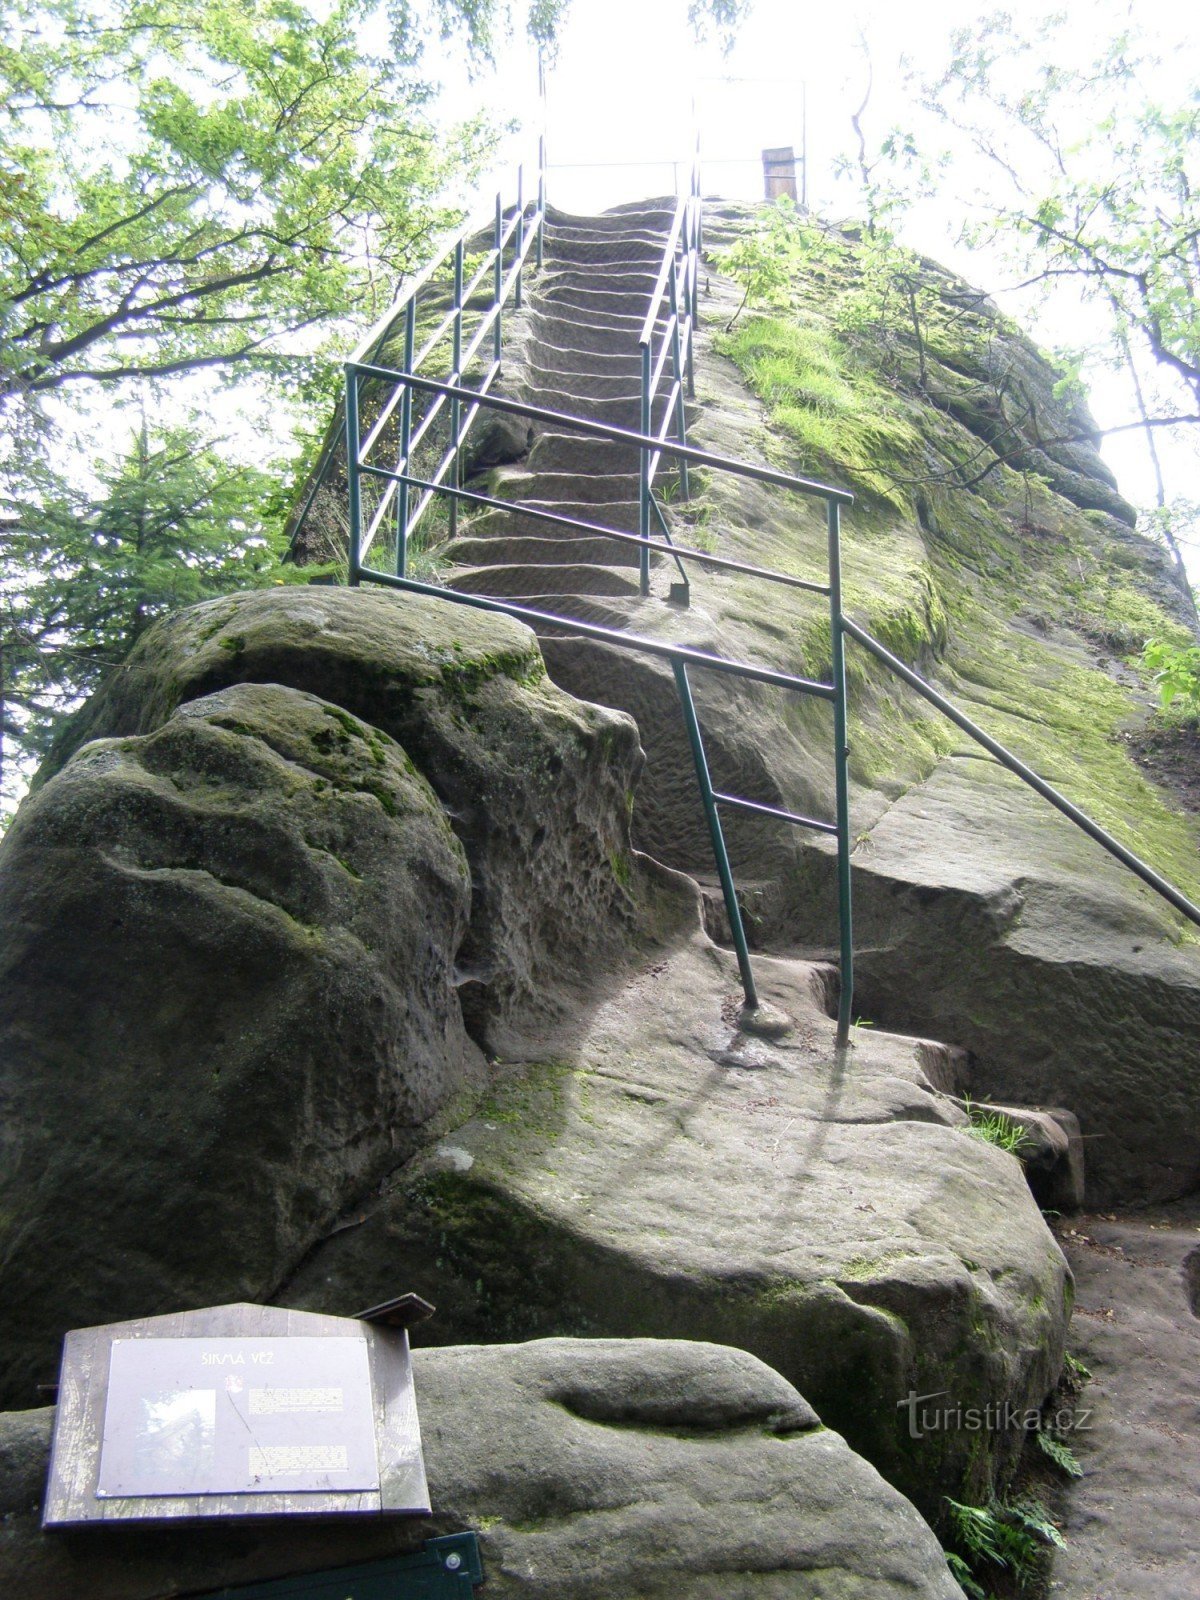 Turnul înclinat - punctul de vedere al lui Vítka